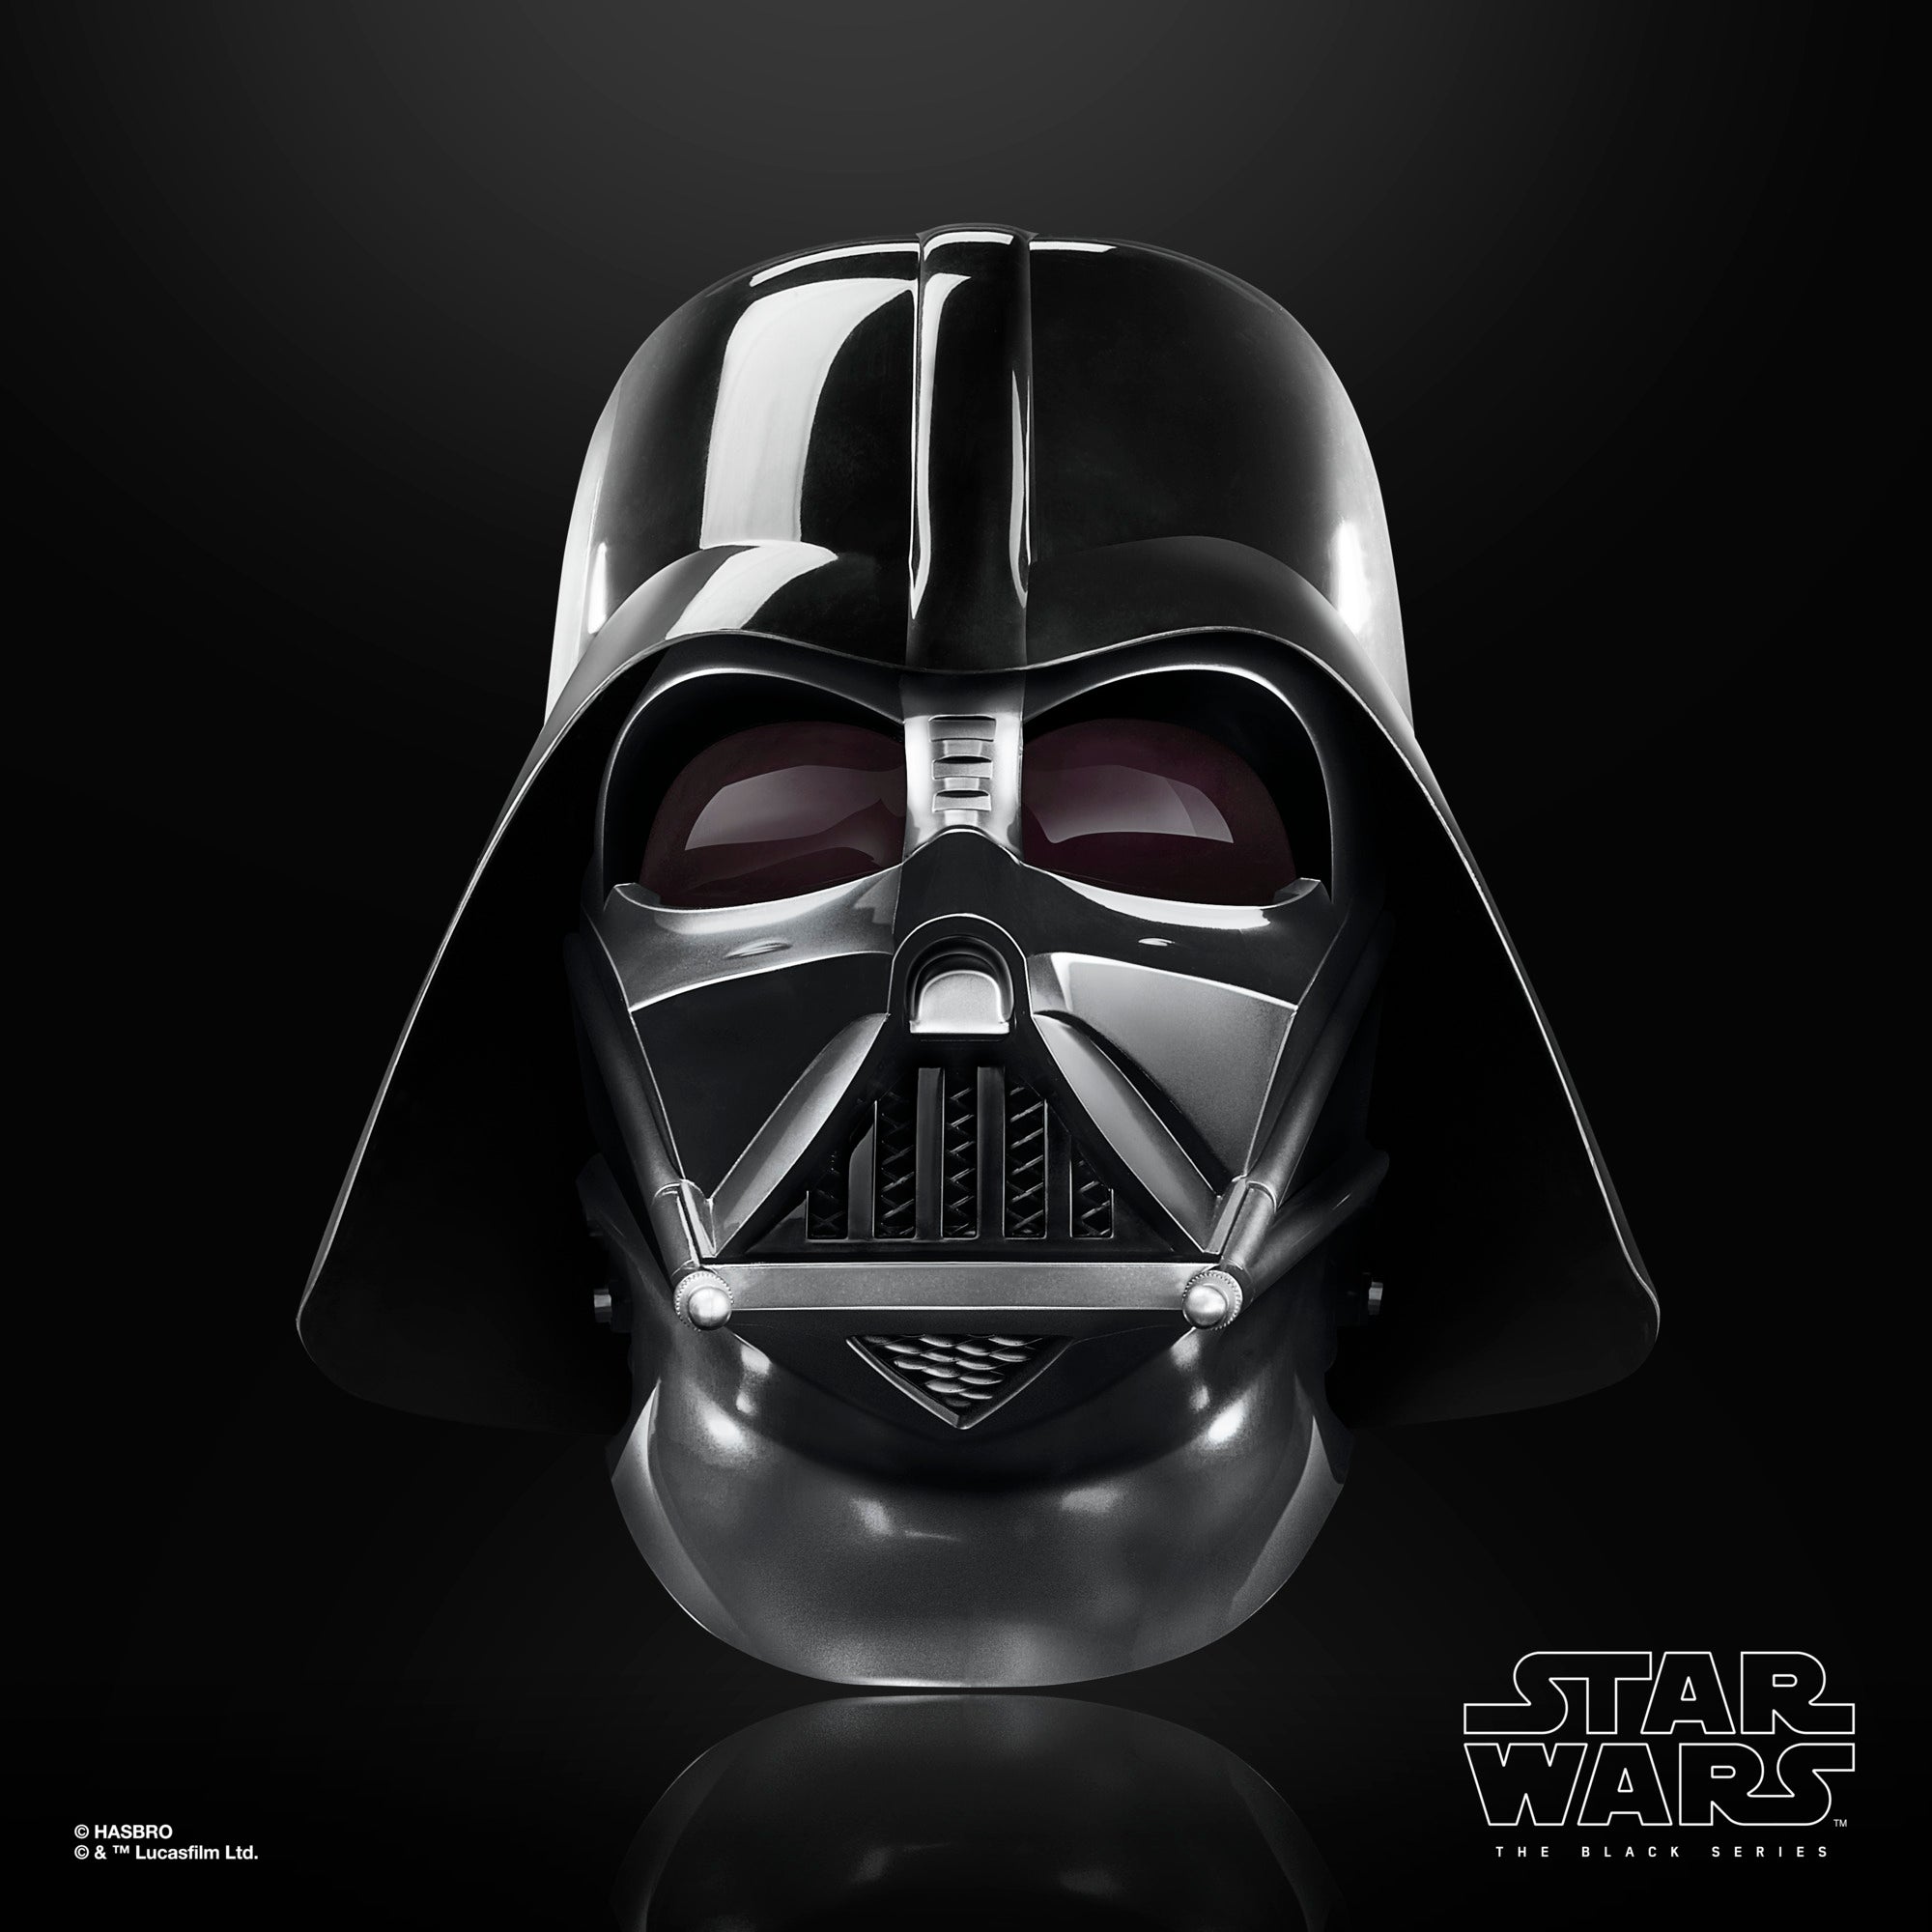 Mislukking Converteren Ga door Star Wars The Black Series Darth Vader Premium Electronic Helmet – Hasbro  Pulse